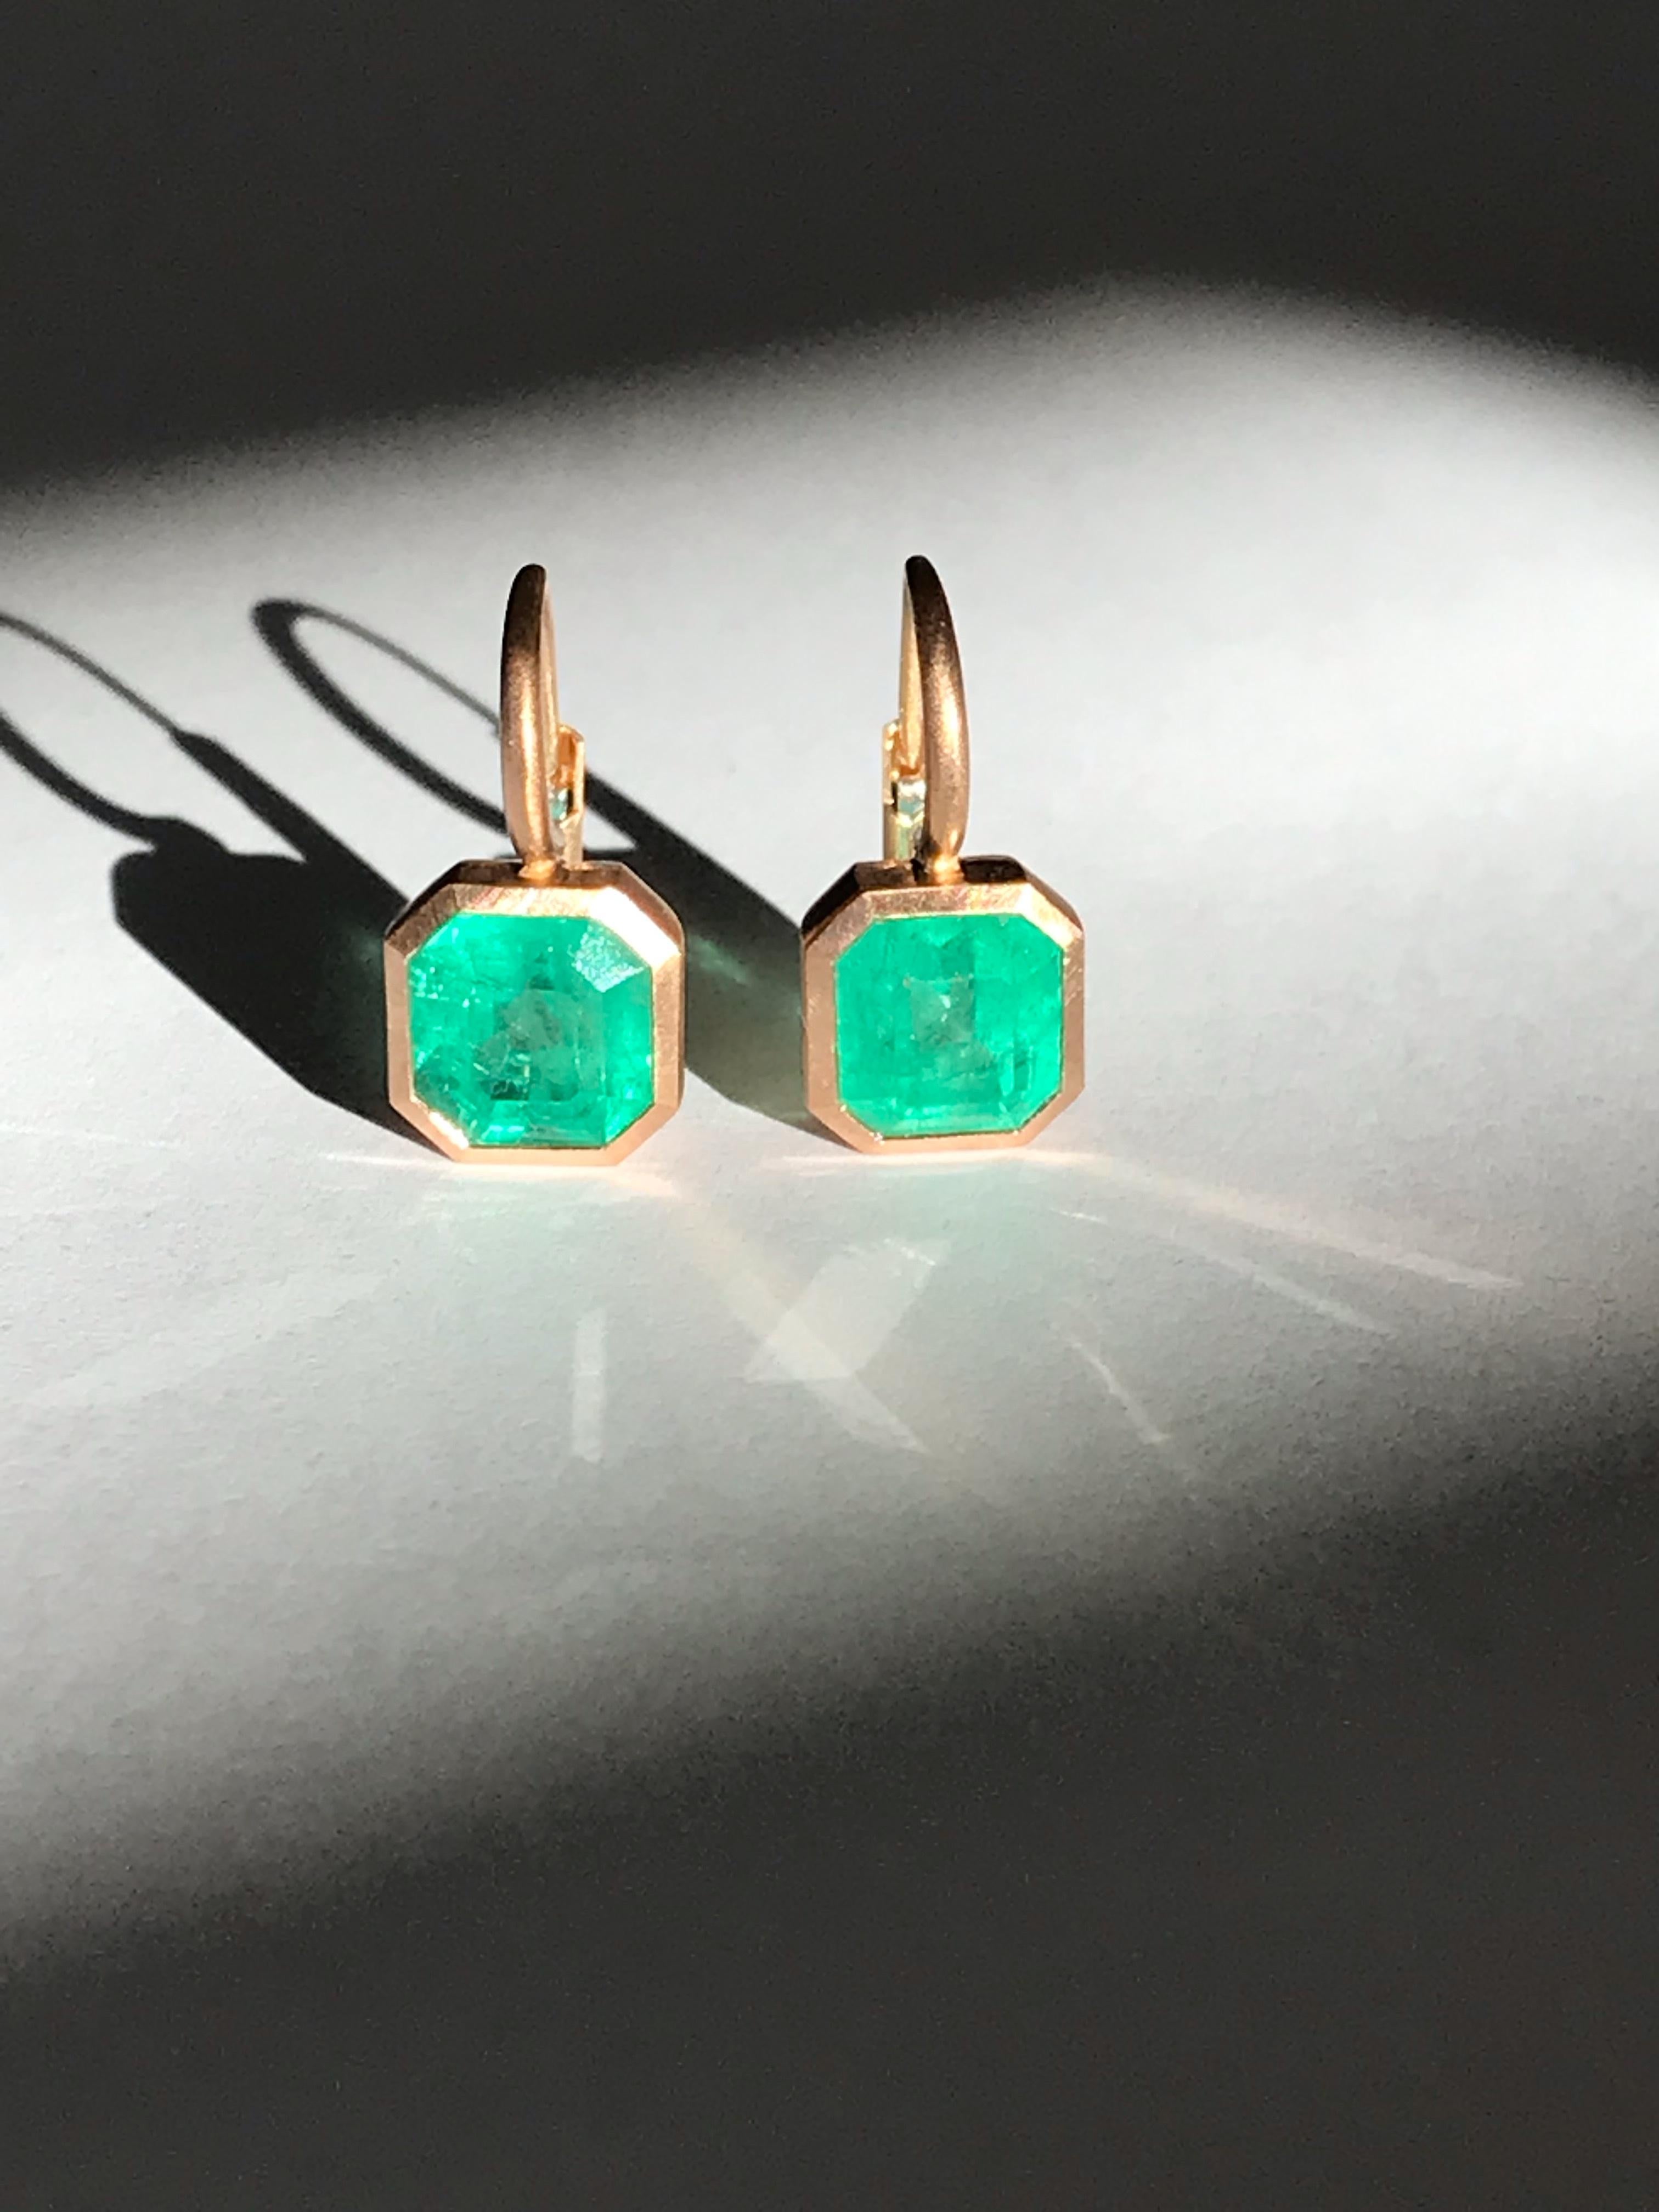 Dalben 4, 03 Carat Colombian Emerald Rose Gold Earrings 5